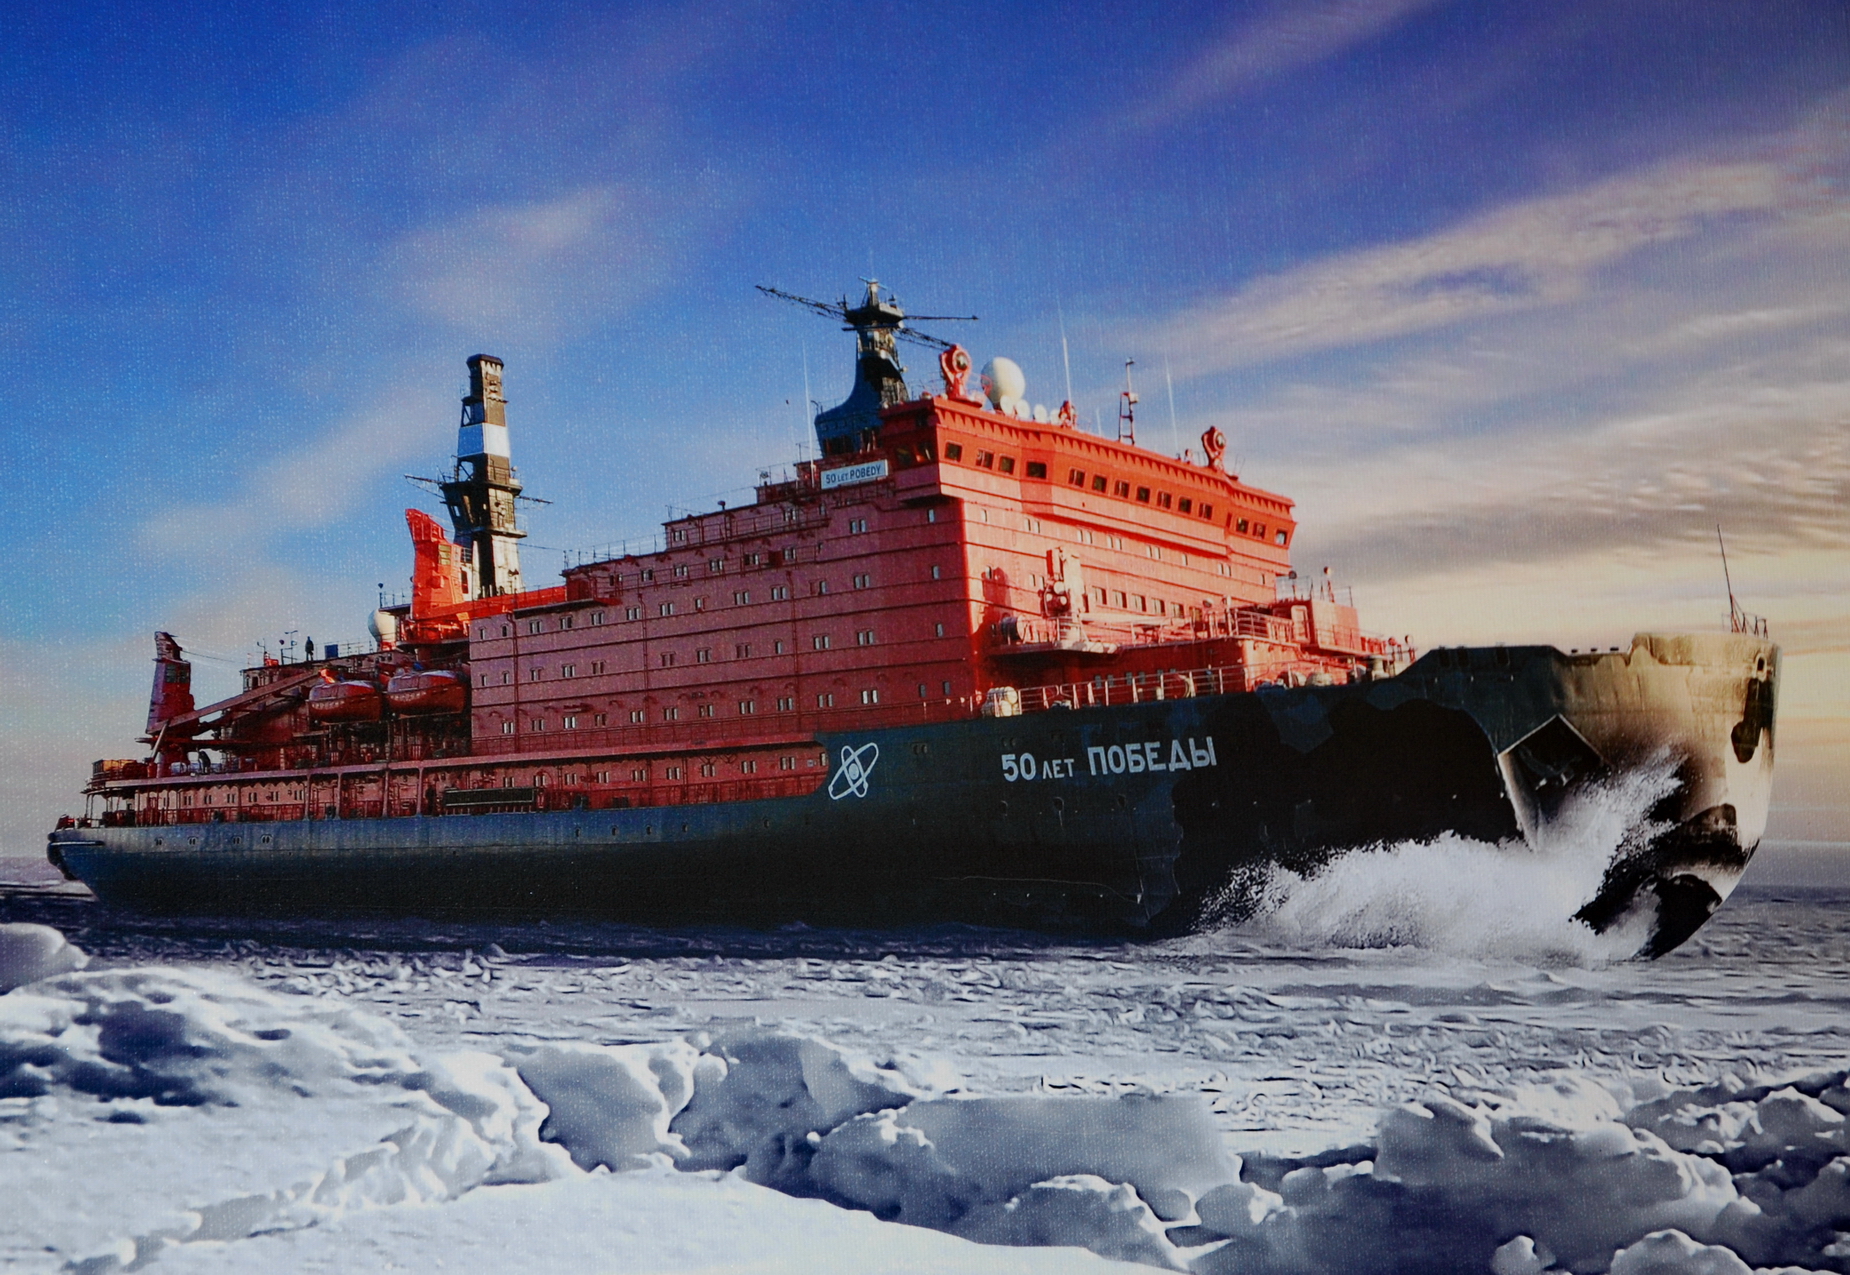 Арктика сегодня. К 2024 году грузооборот на Севморпути может вырасти до 90 млн тонн